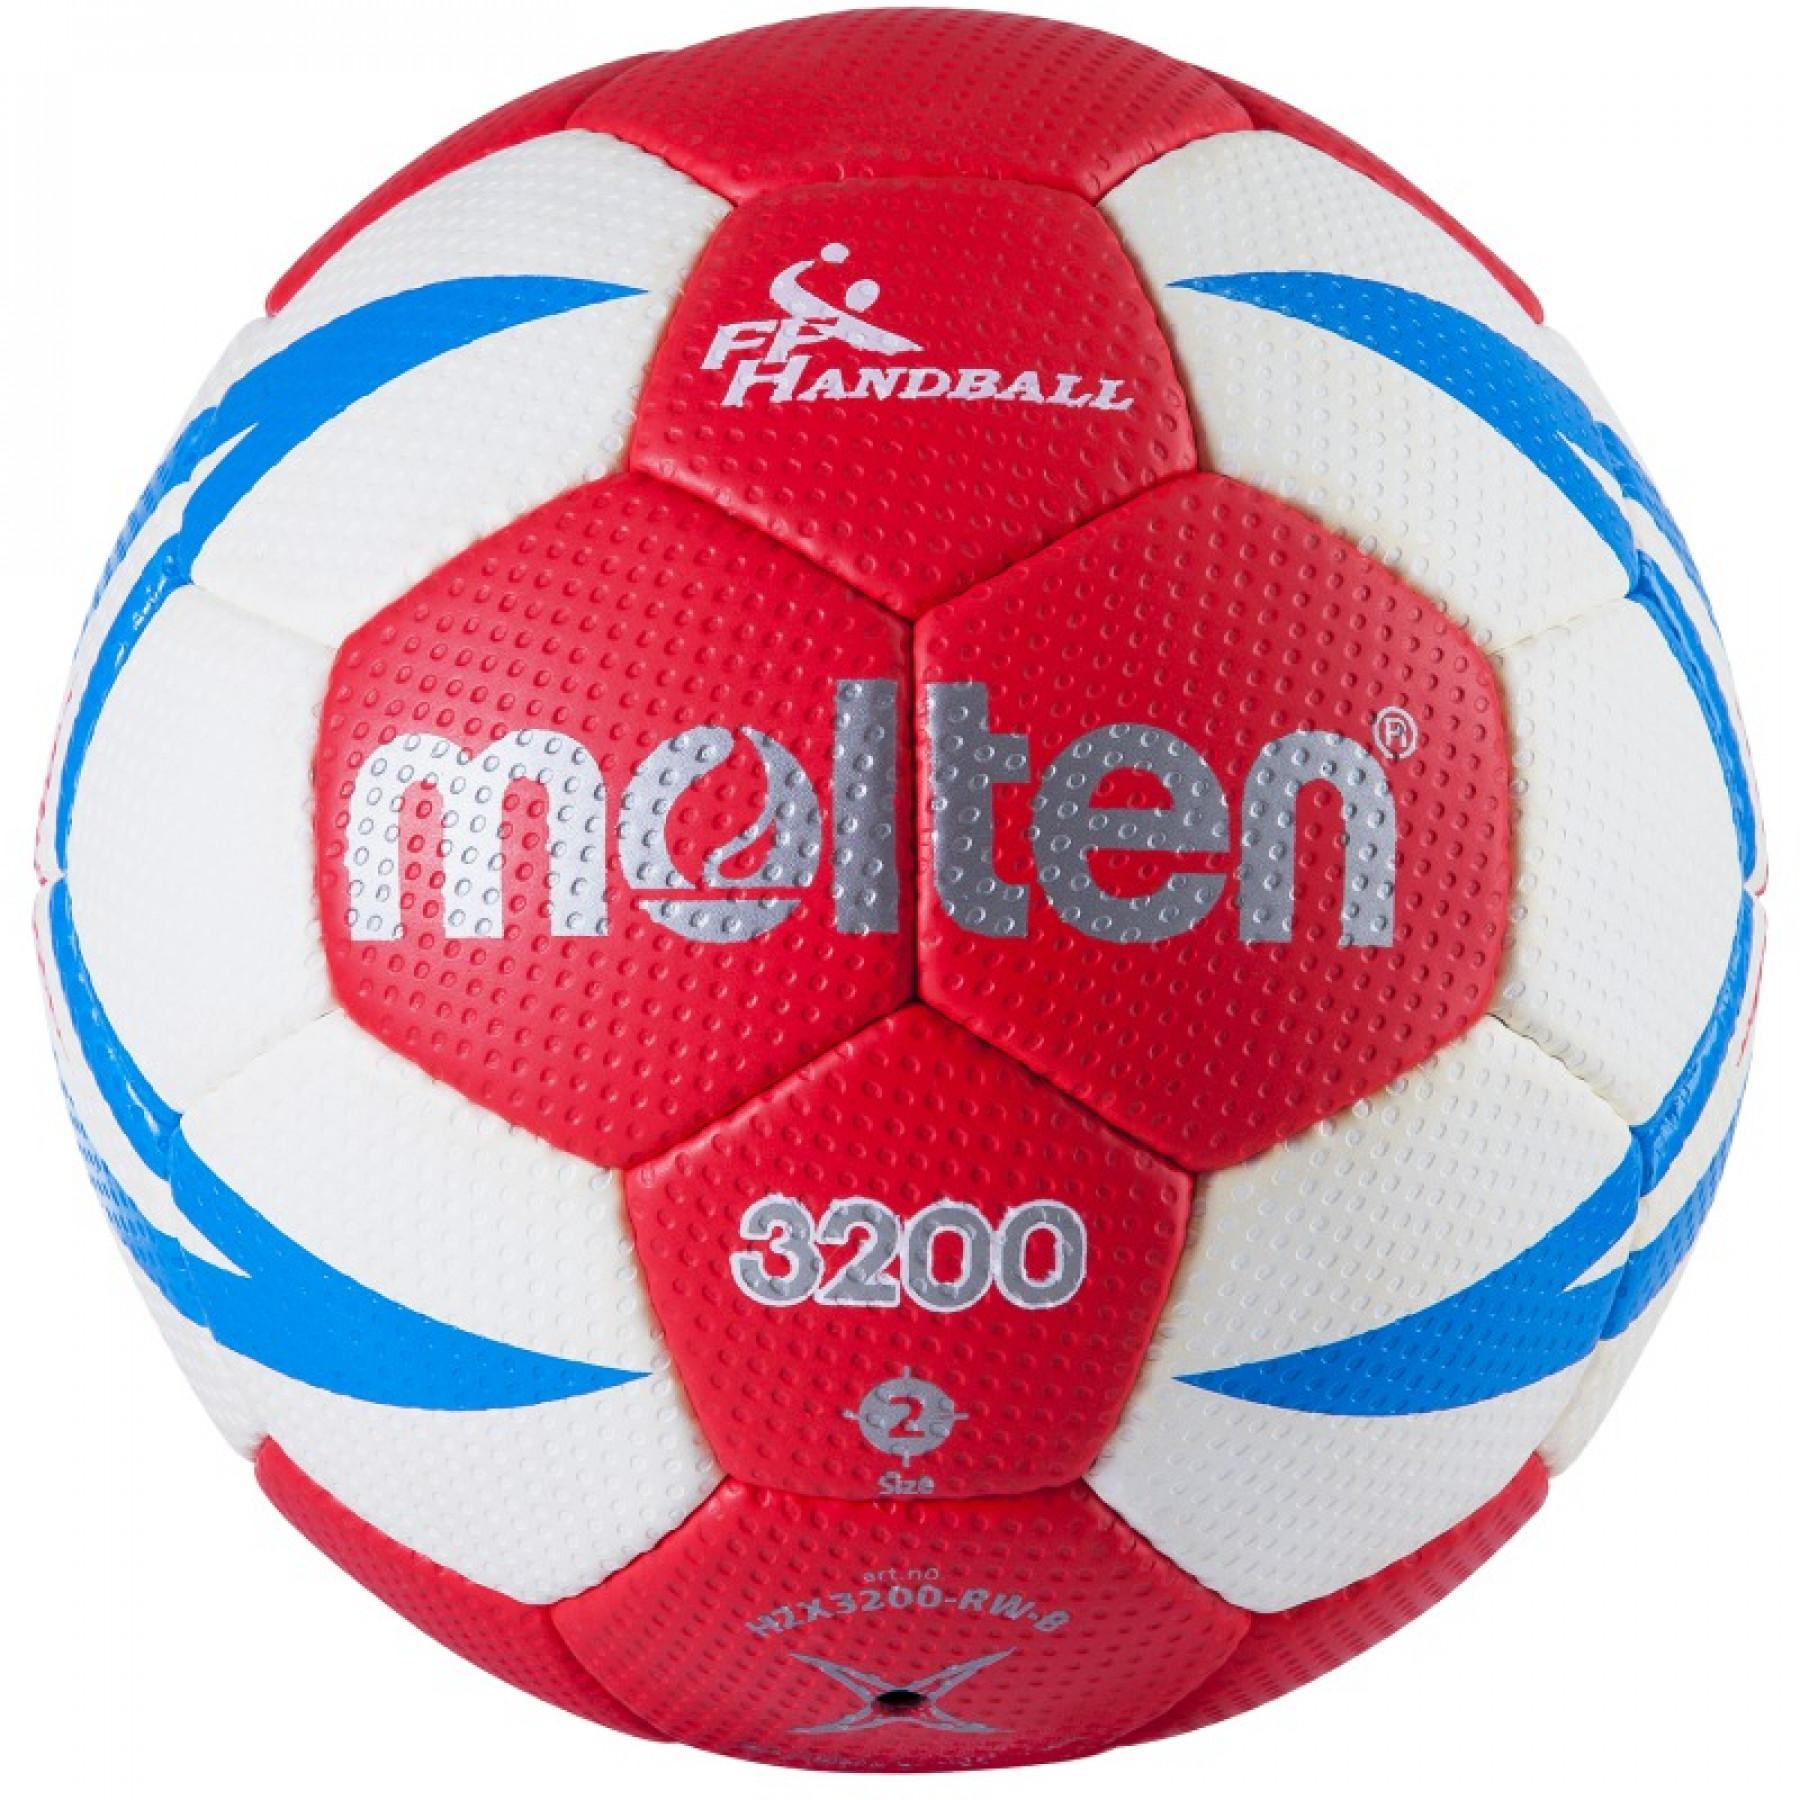 Pak van 10 trainingsballen Molten HX3200 FFHB